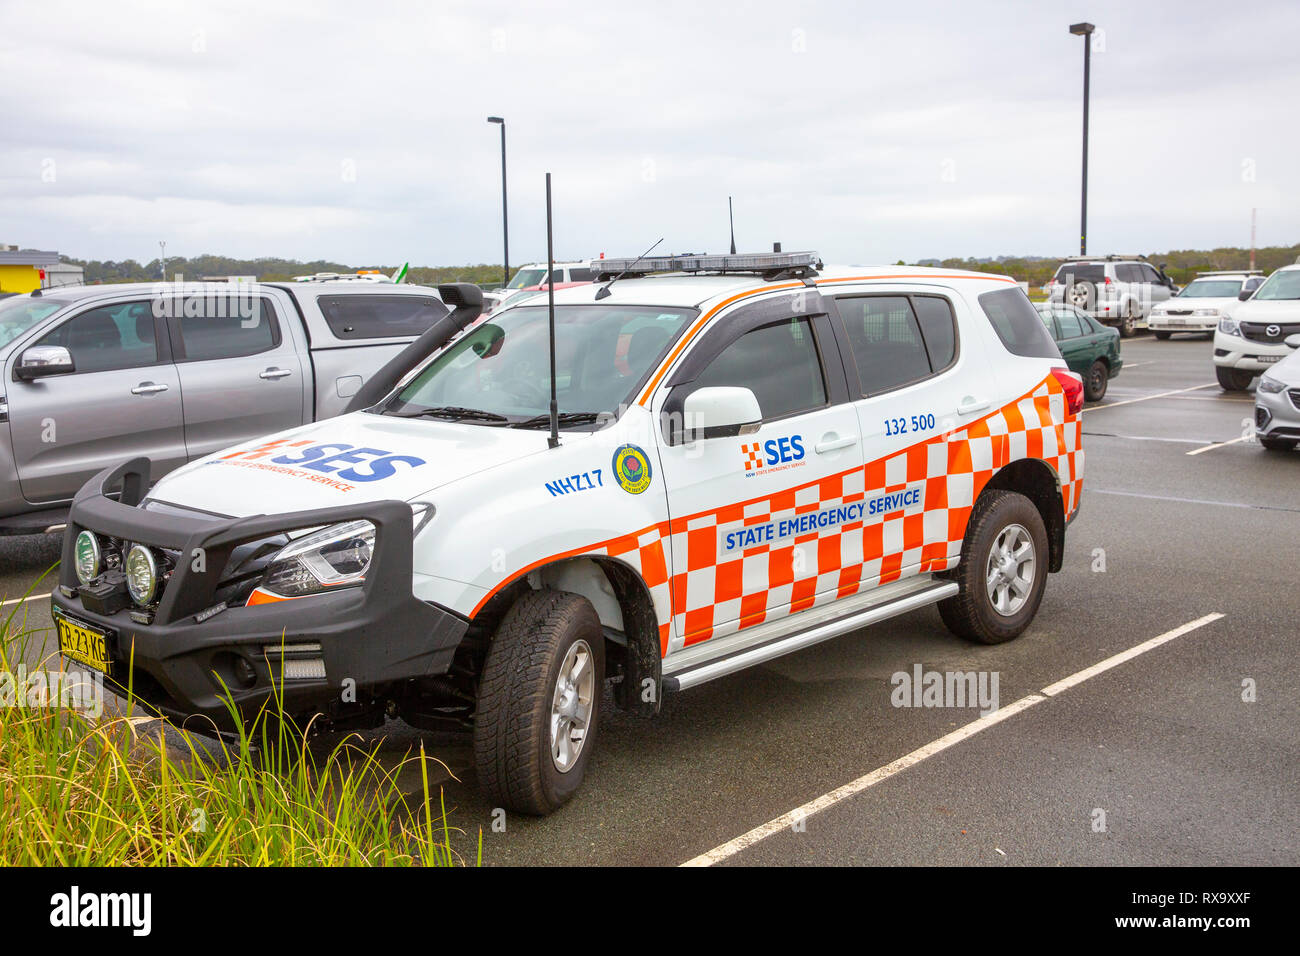 Le Service d'urgence SES État de la Nouvelle Galles du Sud offre aux bénévoles qui aident les résidents dans les situations d'urgence, Australie Banque D'Images